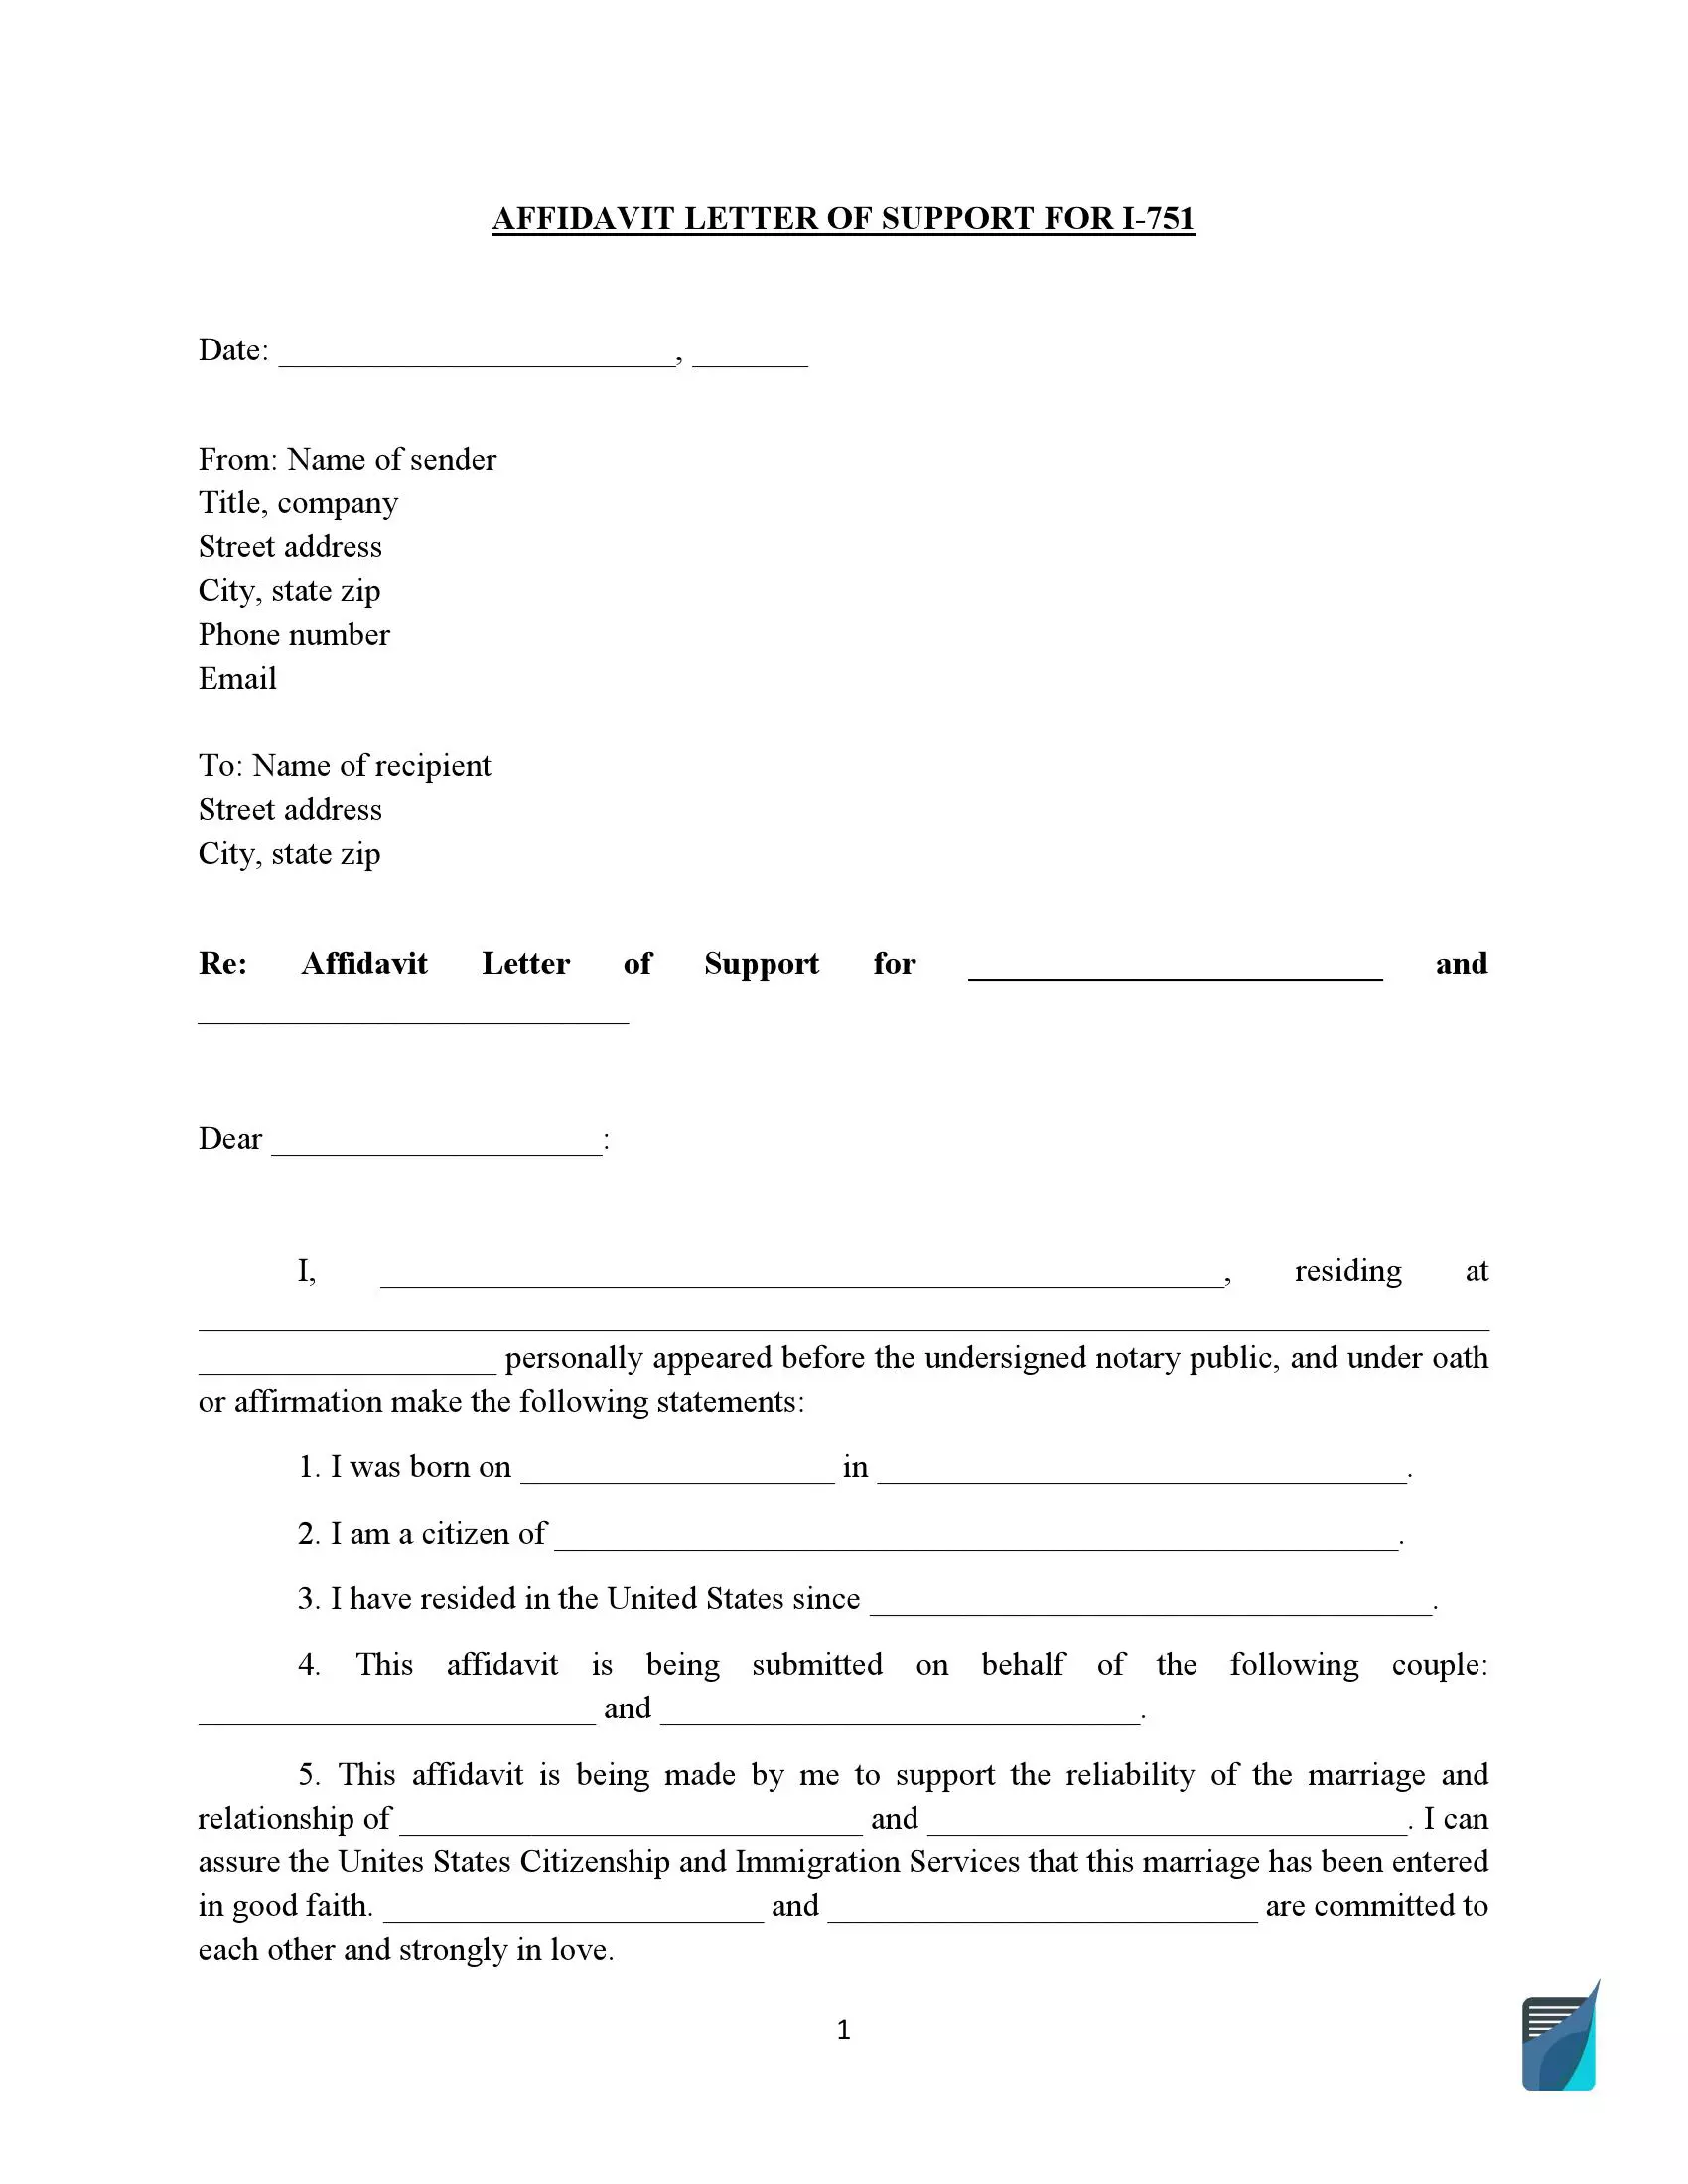 Affidavit of Support (form I-751)-preview